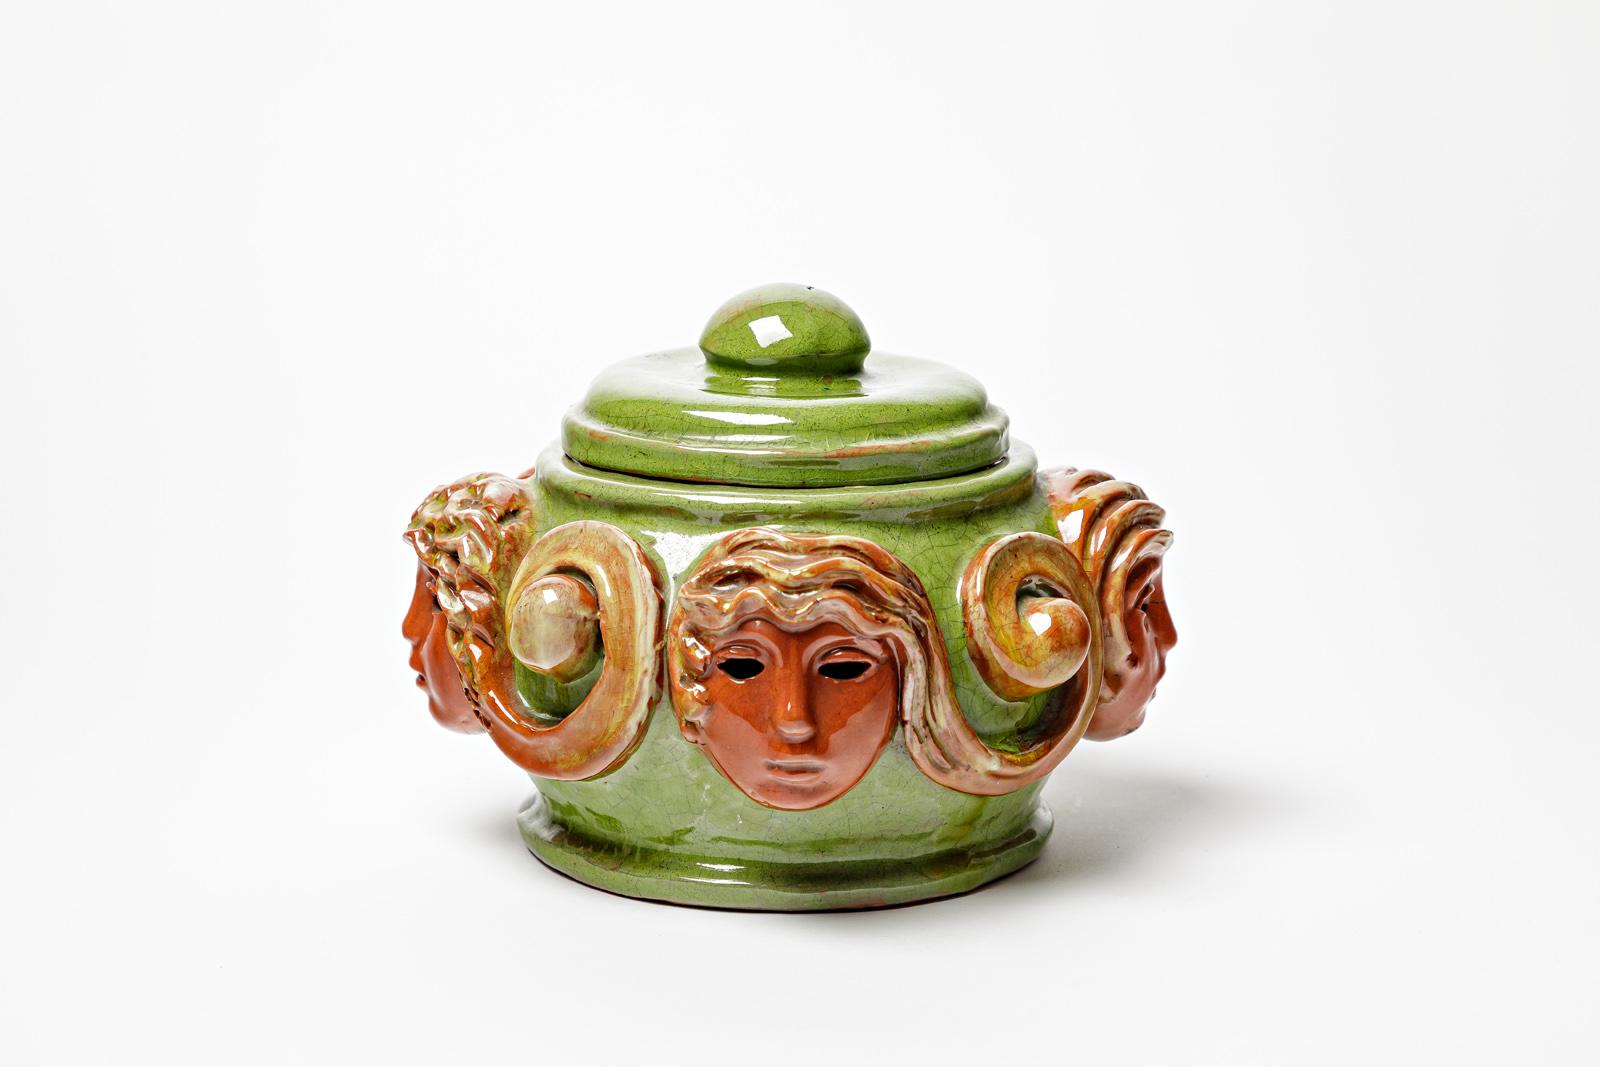 Paul Pouchol zugeschrieben / im Stil von Paul Pouchol

Große dekorative Keramikbox

Orange und grün glasierte Keramik Farben

Original perfekter Zustand

Signiert unter dem Sockel

Realisiert um 1940

Höhe 16 cm
Groß 21 cm